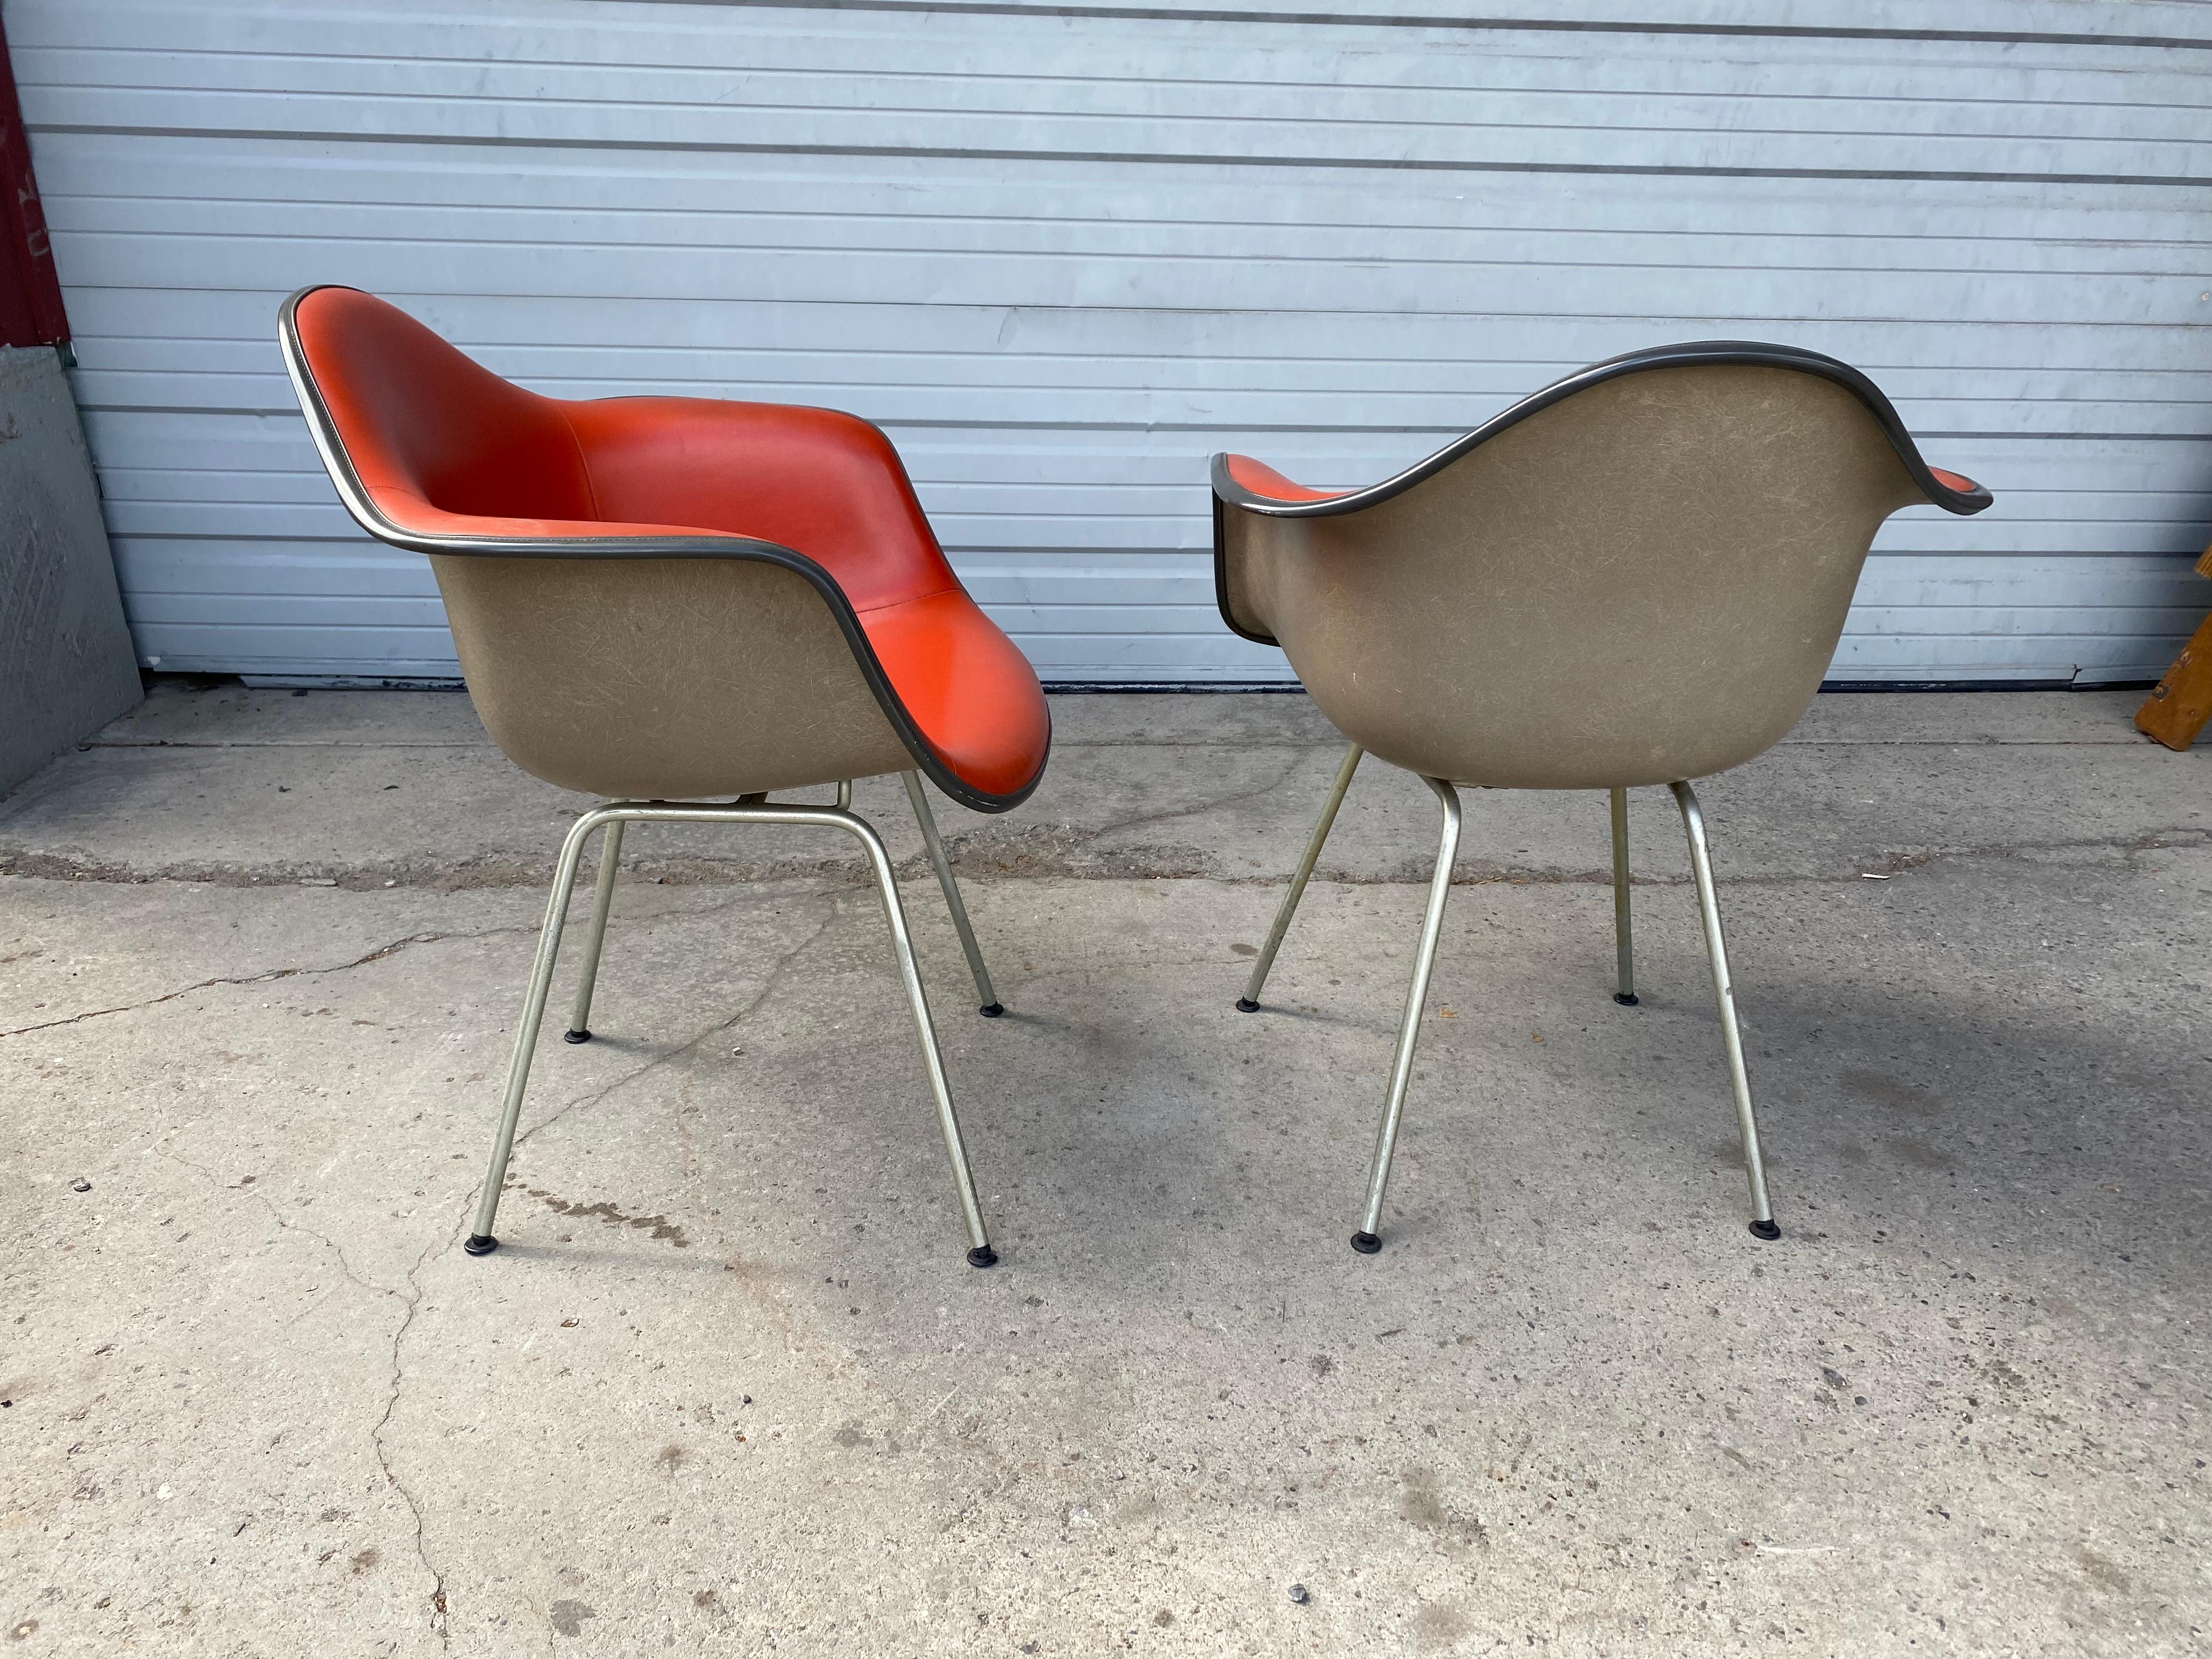 Paire classique de chaises coquilles à accoudoirs rembourrés, de style moderne du milieu du siècle, conçues par Charles et Ray Eames pour Herman Miller. Magnifique bicolore, les chaises sont en très bon état d'origine. Extrêmement confortable.